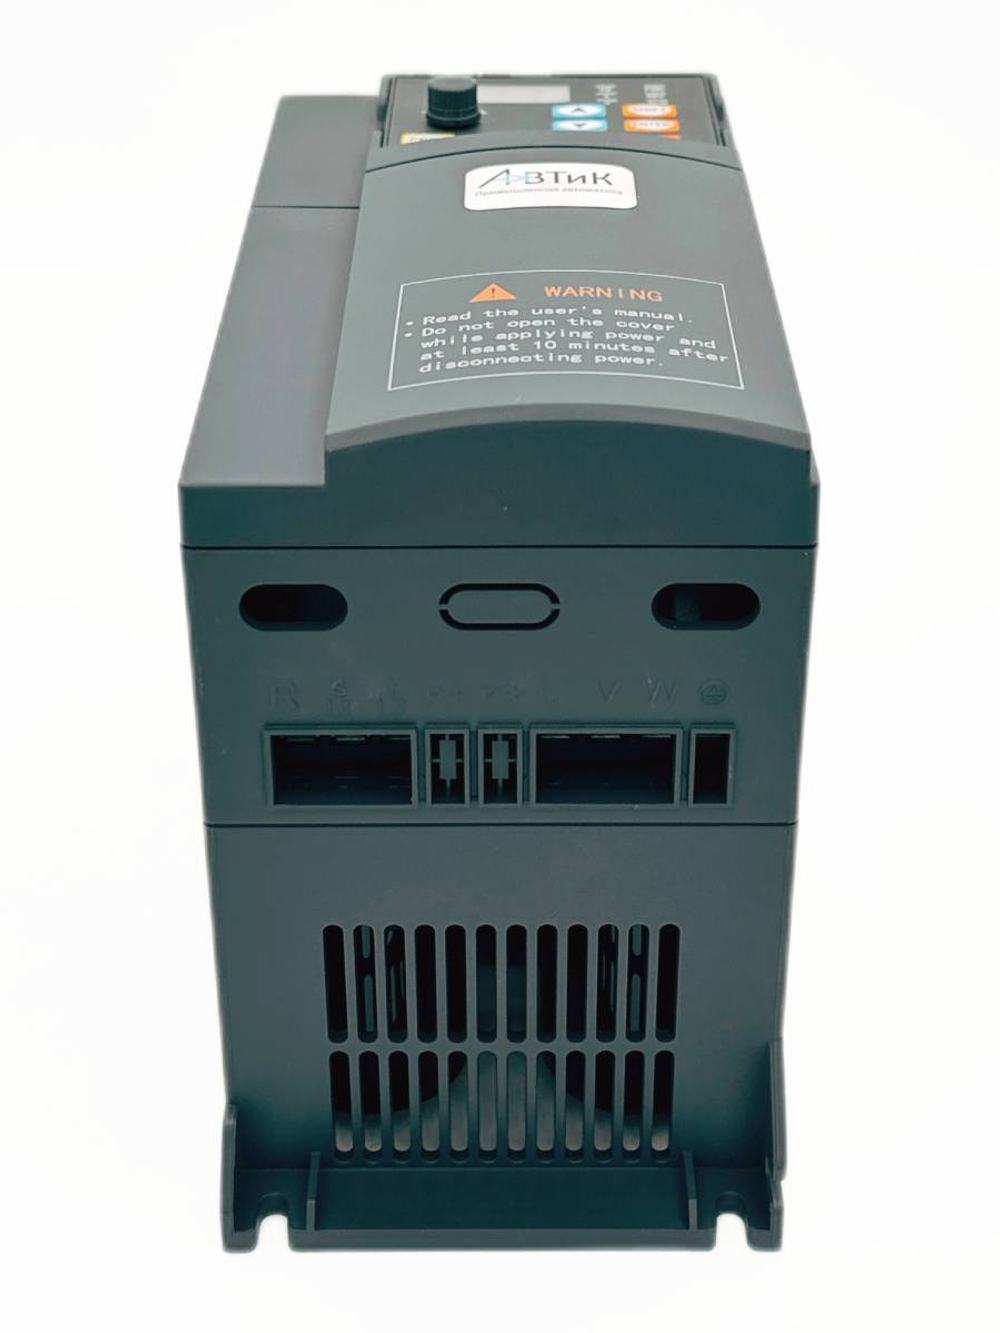 Преобразователь частоты Z552T4N-150% 5.5 кВт 380В